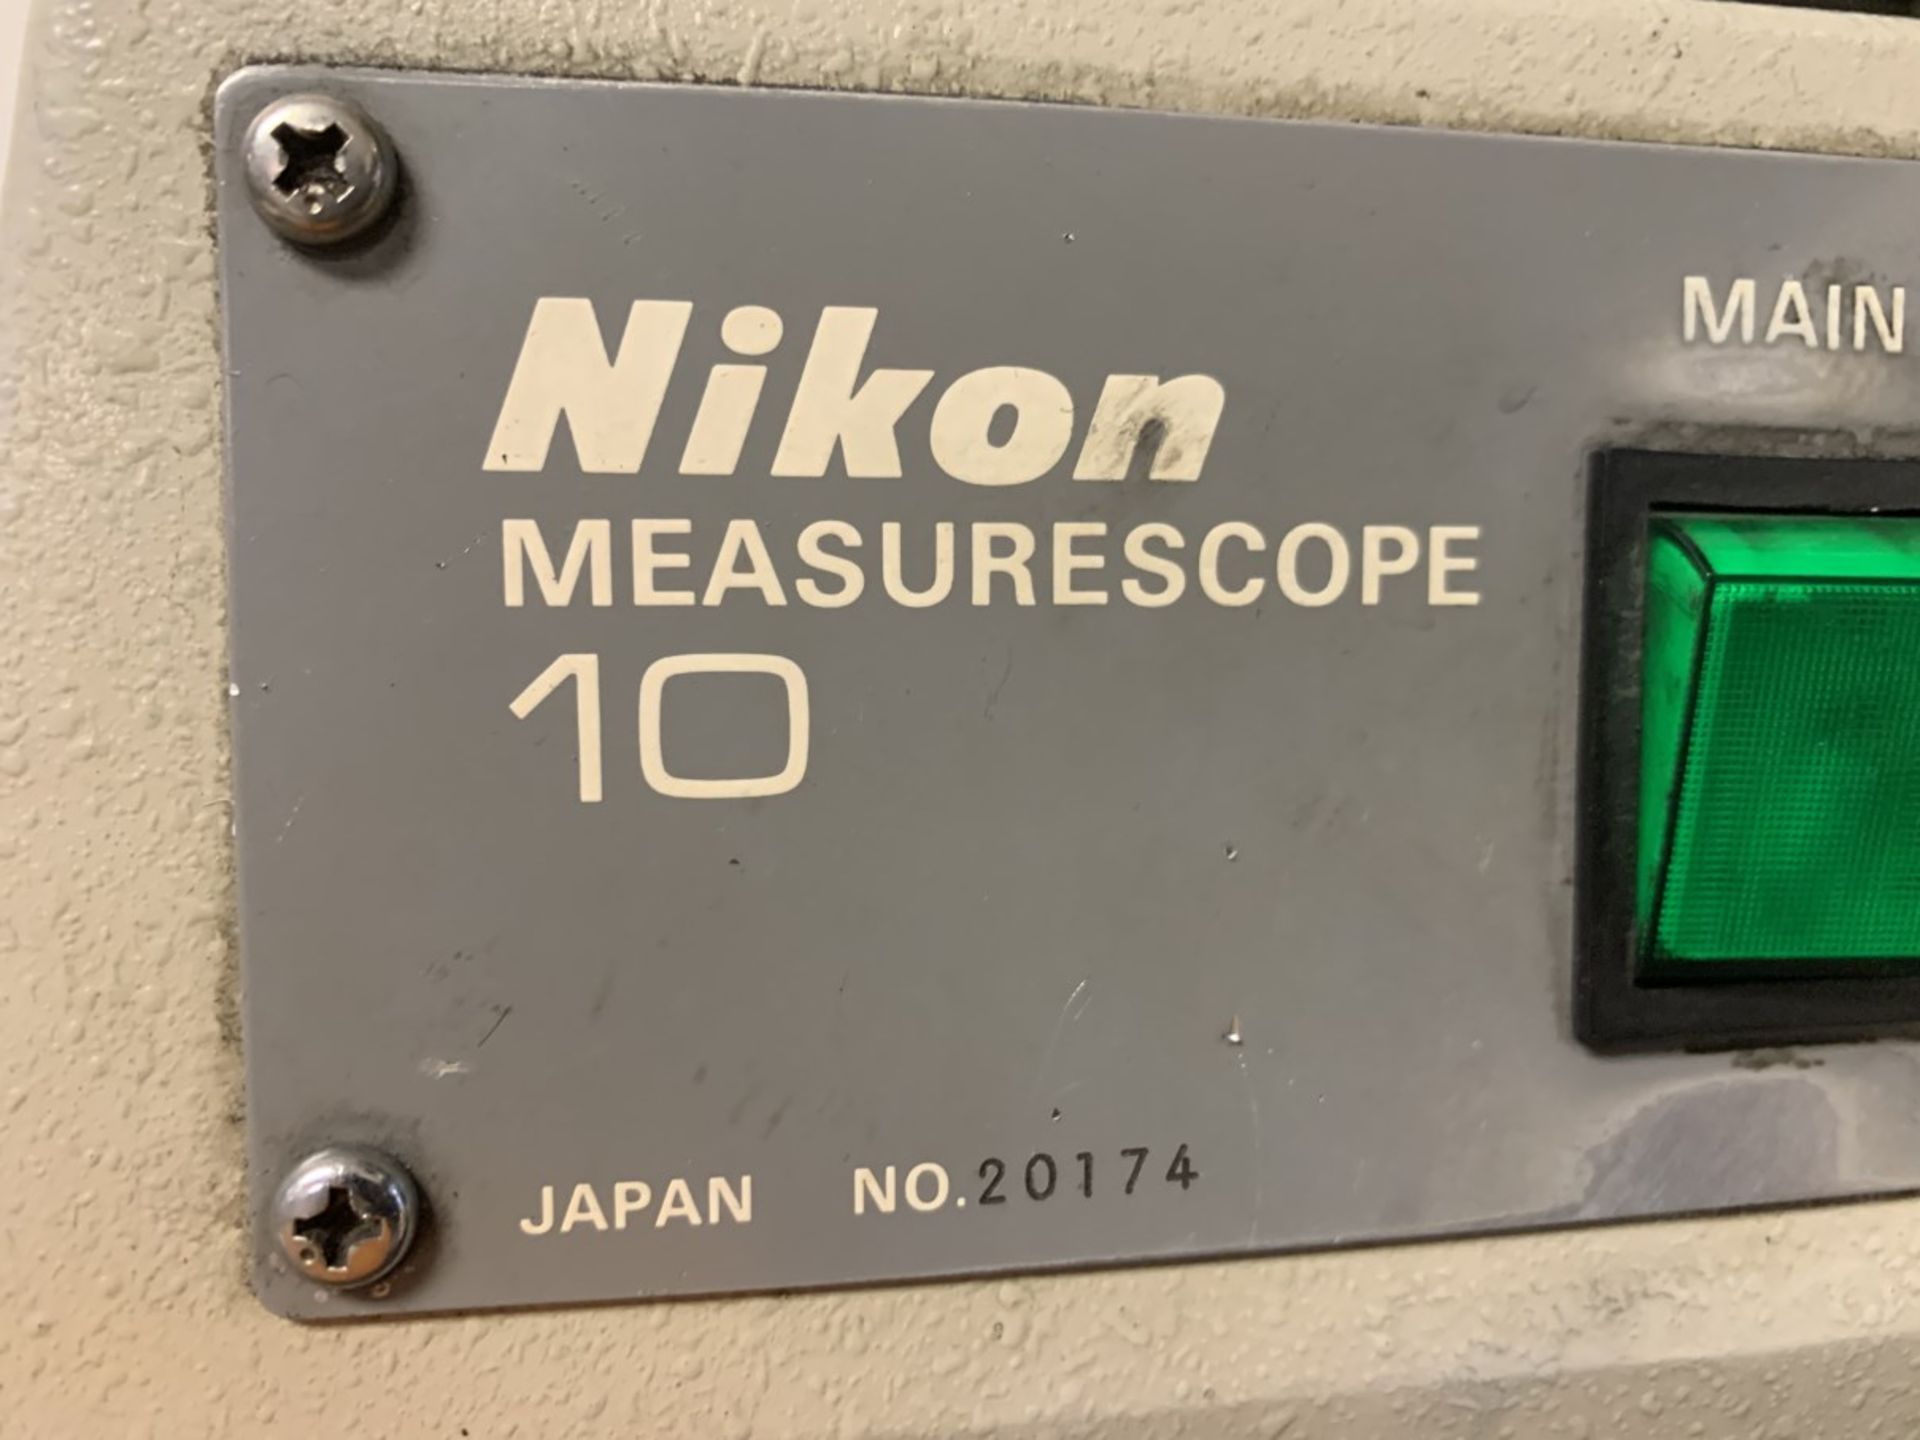 NIKON Measurecope 10, s/n 20174 (Located at: Goudie Tool & Engineering ) - Image 2 of 2